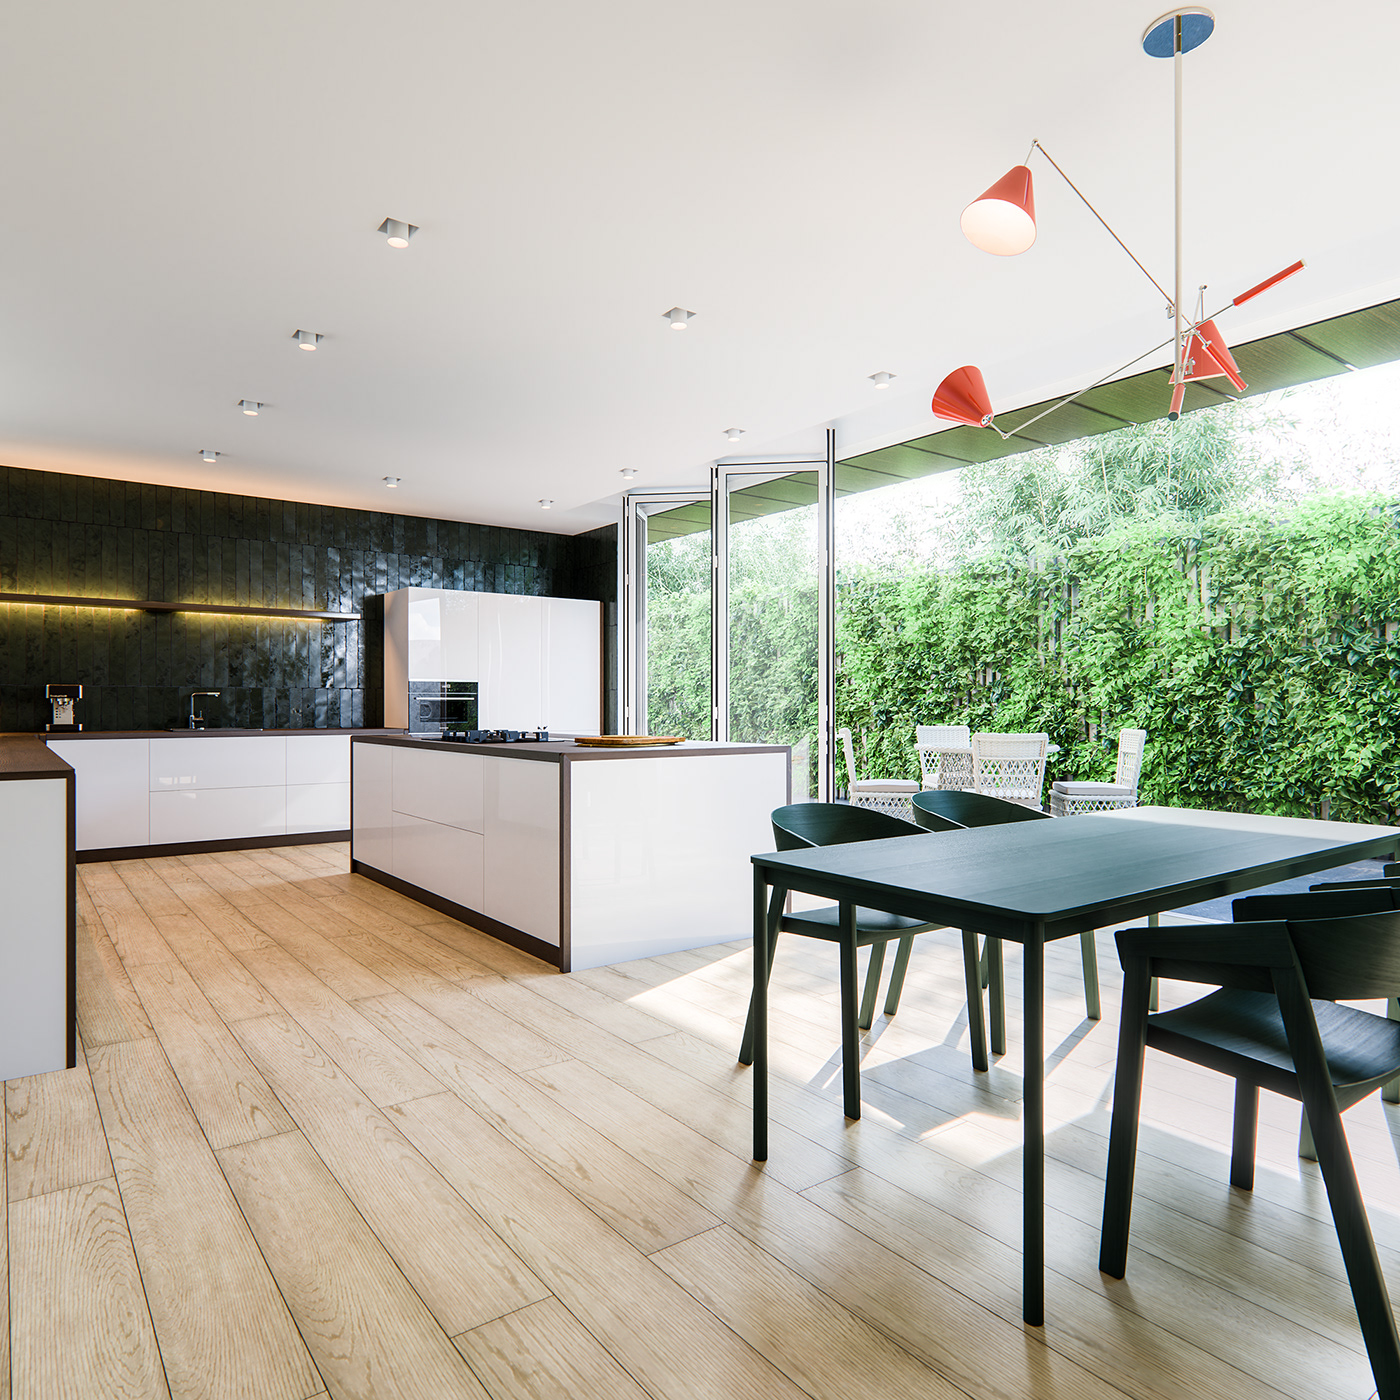 3D archviz bright design Interior kitchen minimalist modern product visualization